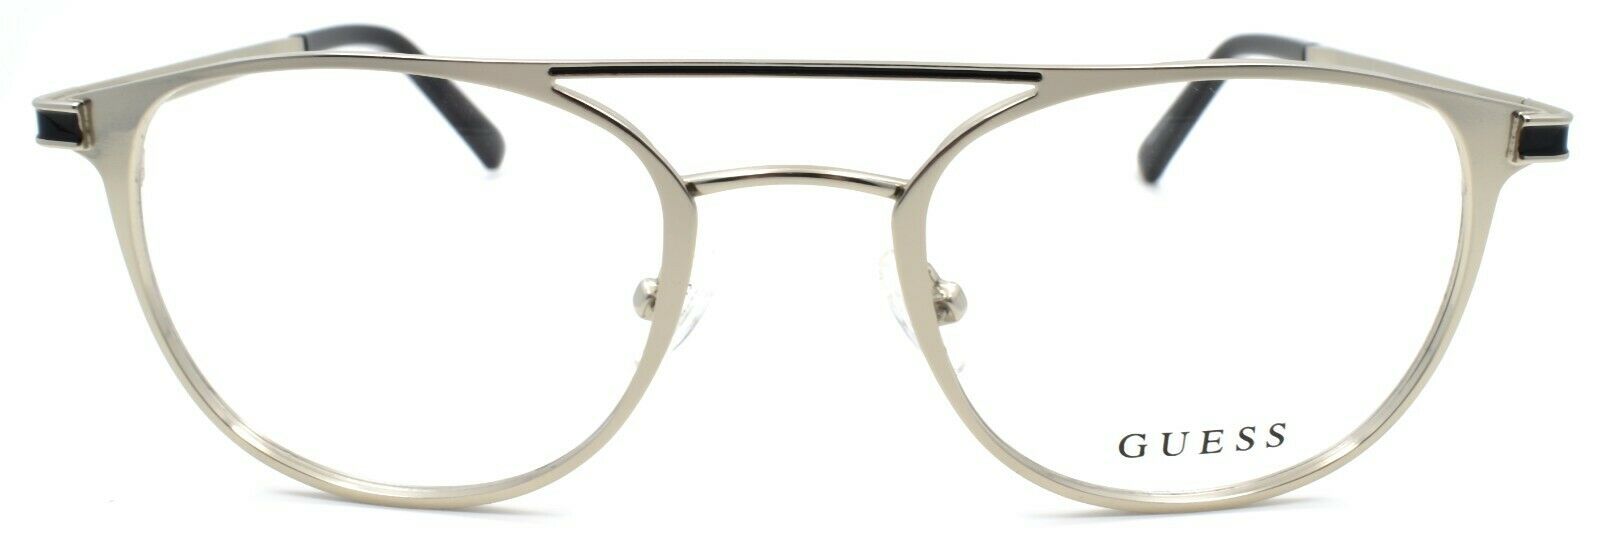 2-GUESS GU1988 010 Men's Eyeglasses Frames Aviator 50-21-145 Light Nickeltin-889214112712-IKSpecs